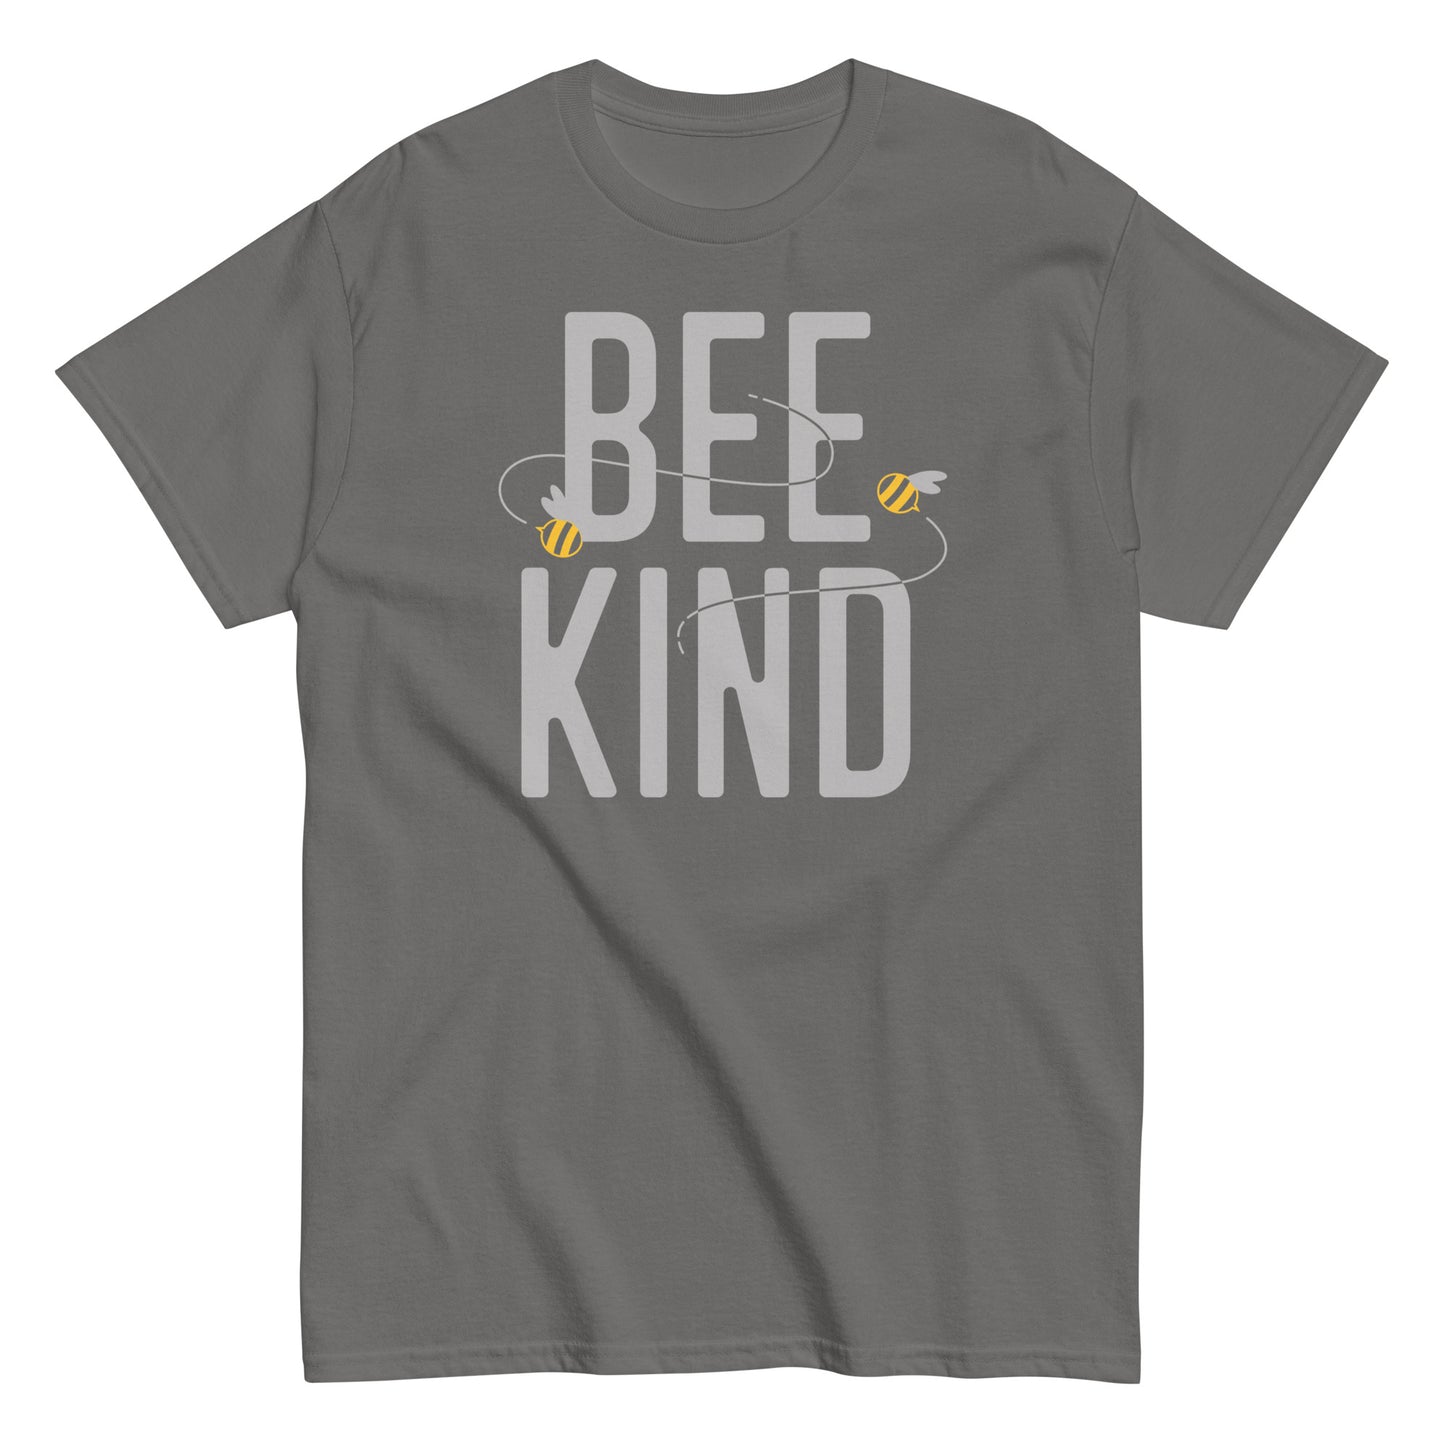 Bee Kind Men's Classic Tee